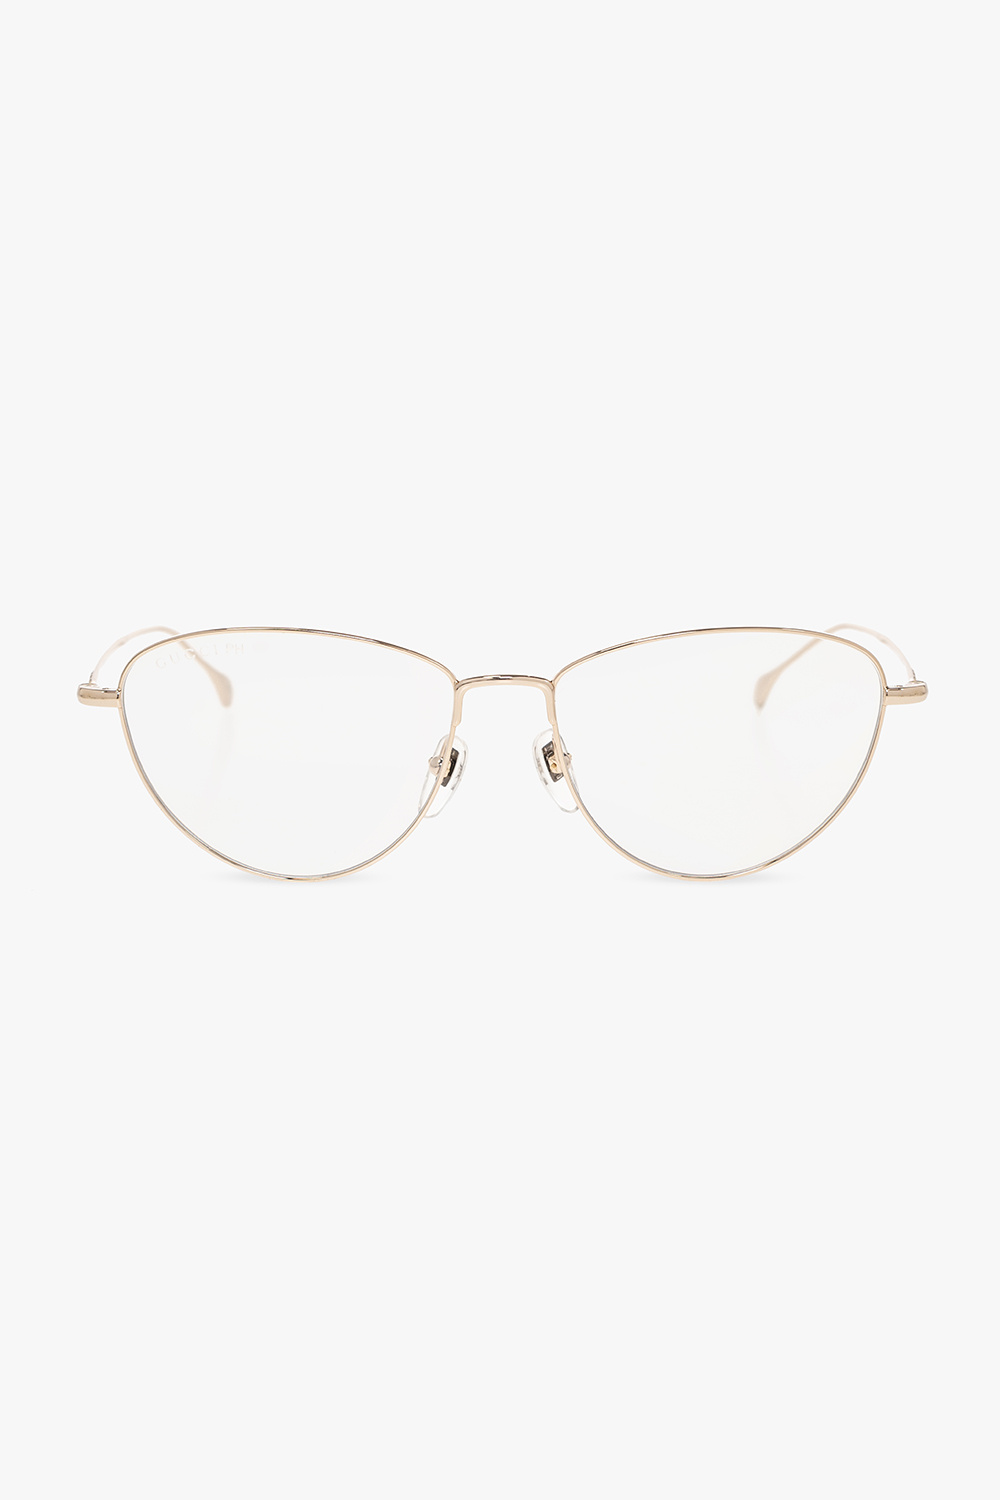 gucci item Optical glasses